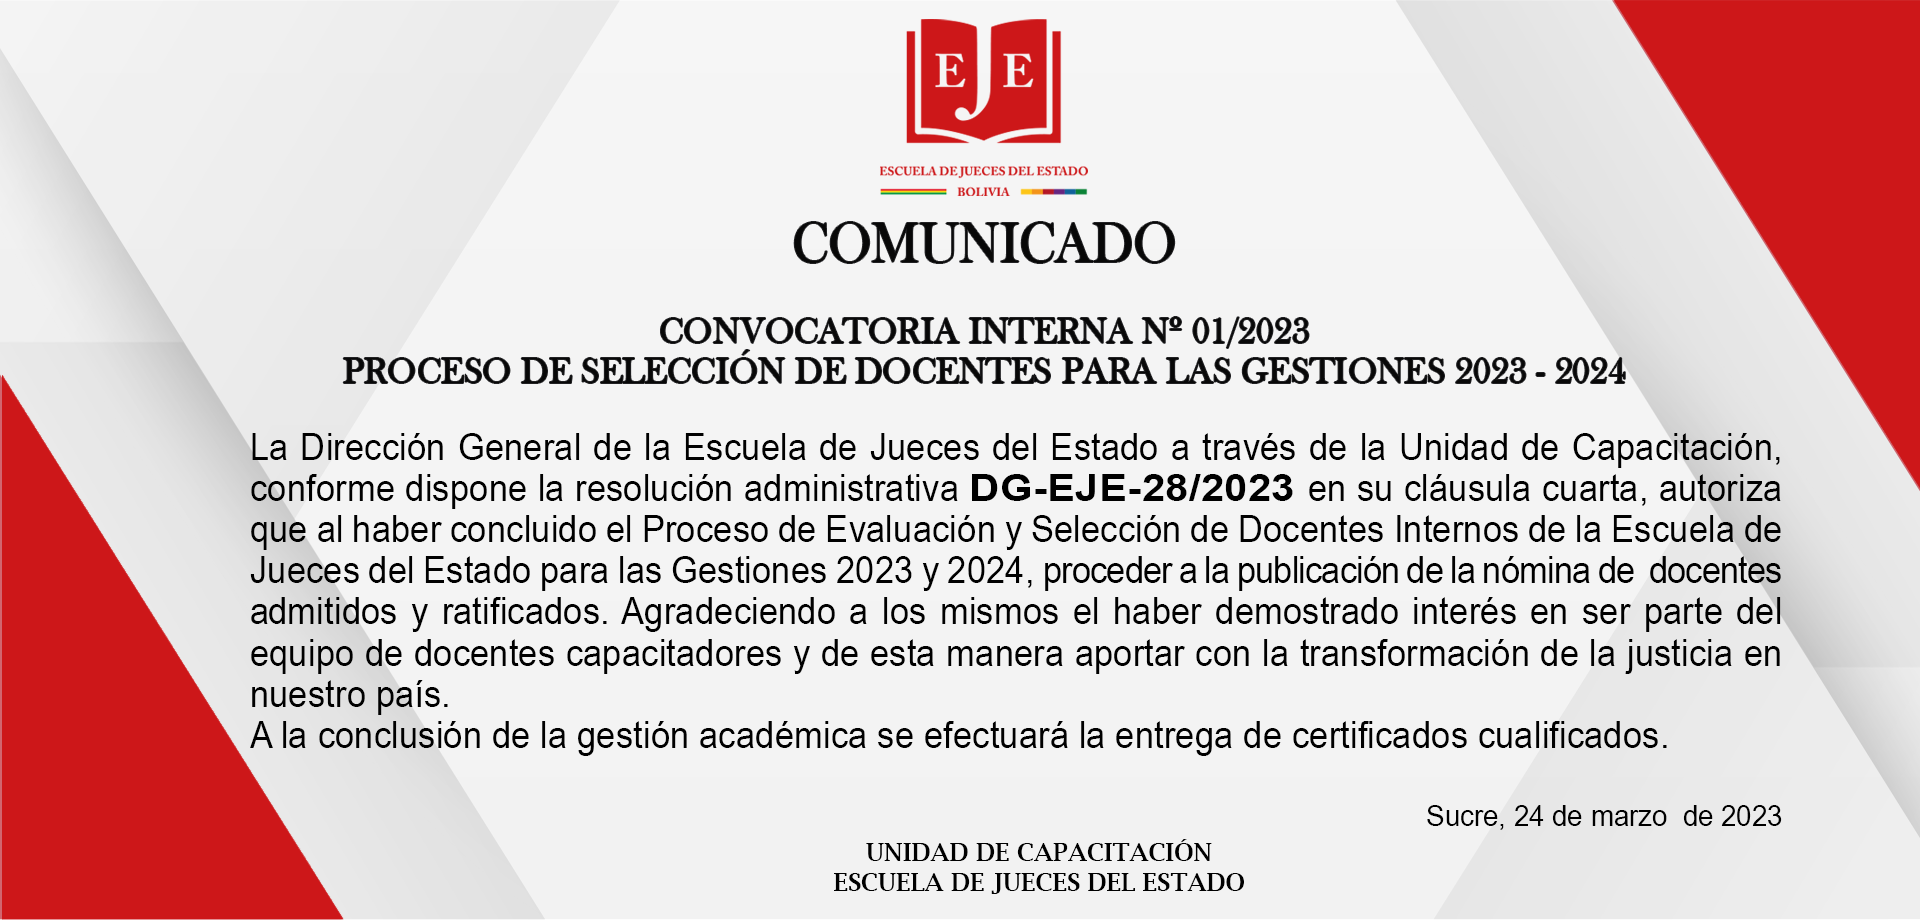 COMUNICADO CONVOCATORIA INTERNA 01/2023 PROCESO DE SELECCIÓN DE DOCENTES PARA LAS GESTIONES 2023 - 2024